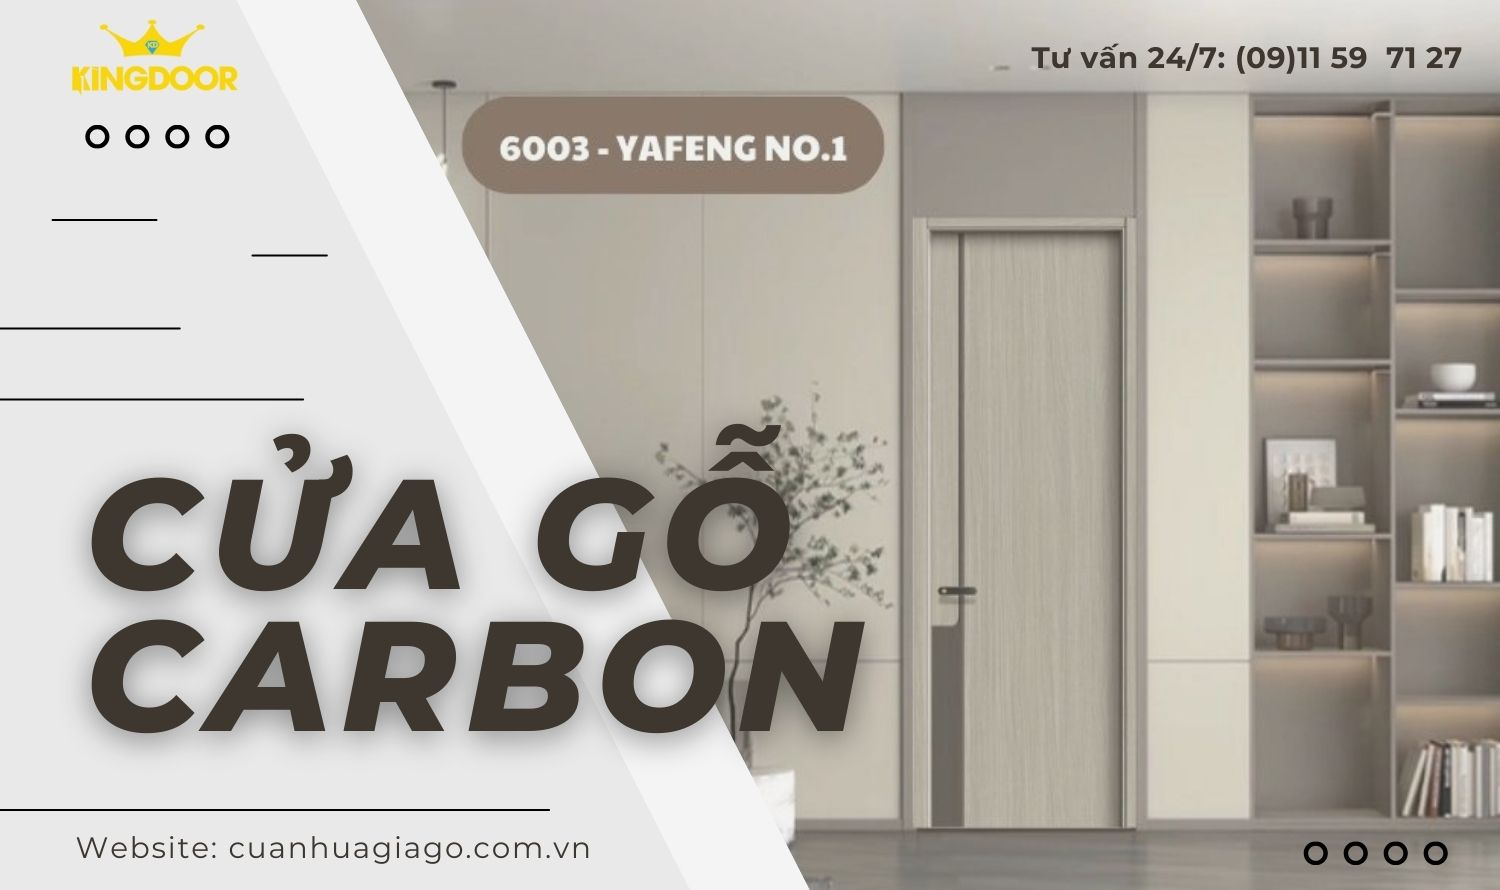 Cửa gỗ Carbon giá tốt chỉ với 1,950,000 VNĐ/m2